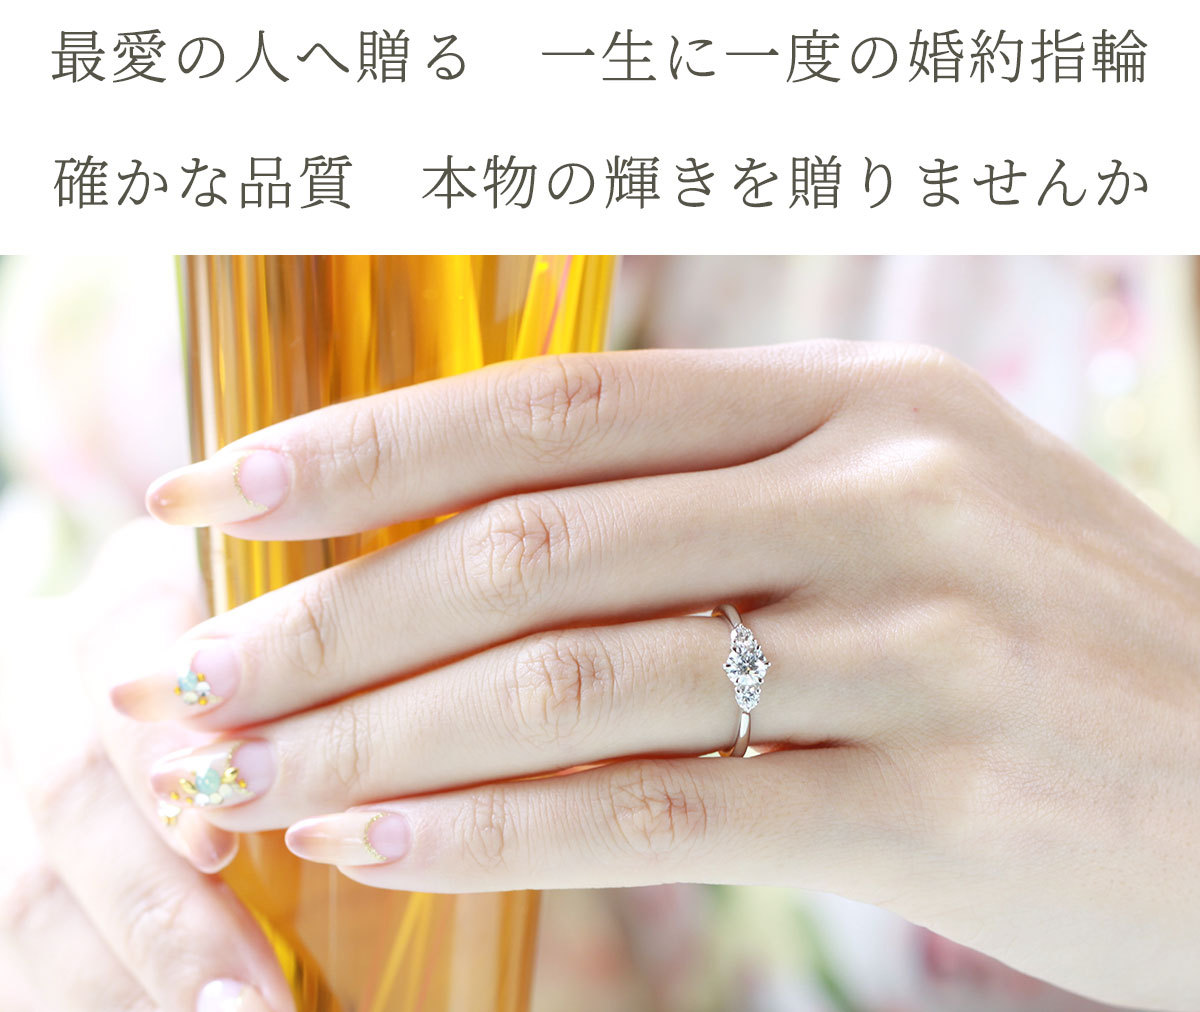 婚約指輪 安い 婚約指輪 ダイヤ 婚約指輪 ティファニー6本爪デザイン 